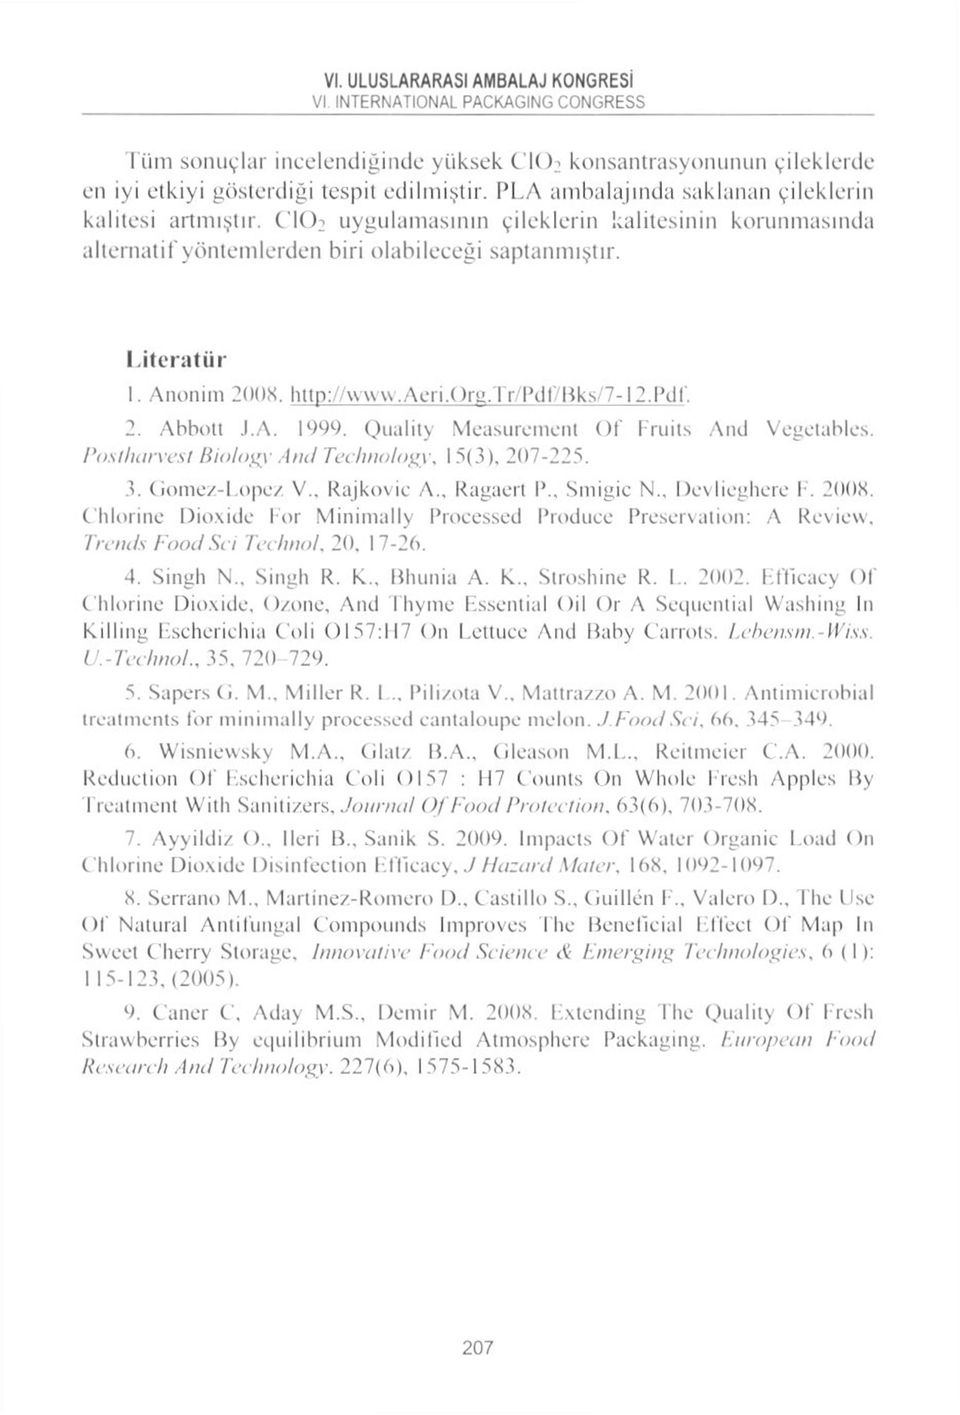 Gomez-Lopez V., Rajkovic A., Ragacrt I'., Sıııigic N Dcvlieghcrc I. 2008. C'lılorine Dioxide For Minimally Processed Producc Preservatioıı: A Review, Treııds Food Sci Technol. 20, 17-26. 4. Singlı N.